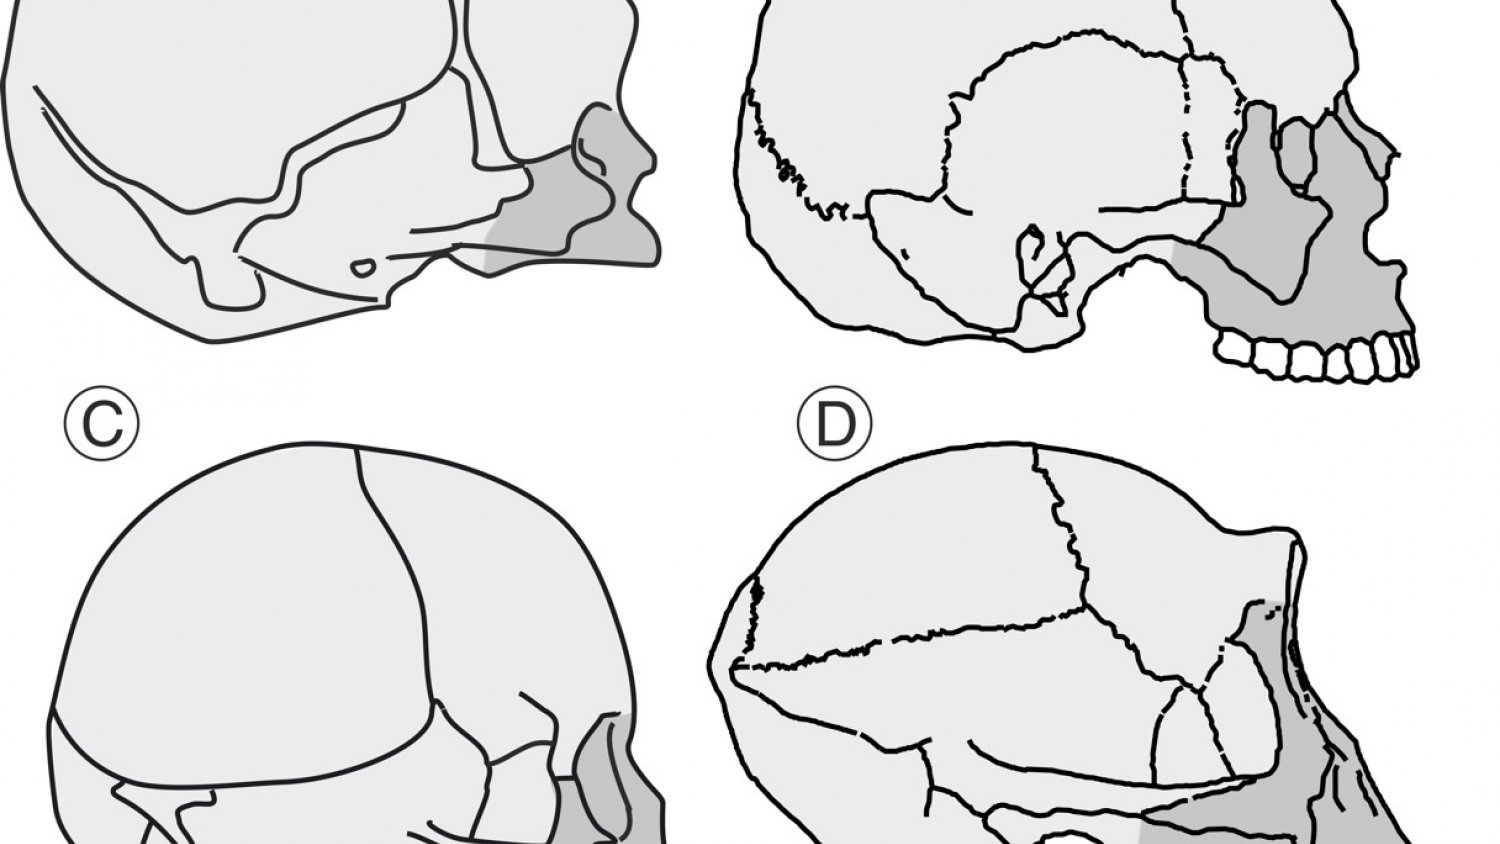 UMA.- Paleontólogos de la universidad desvelan nuevos datos sobre la evolución del cráneo en el linaje humano